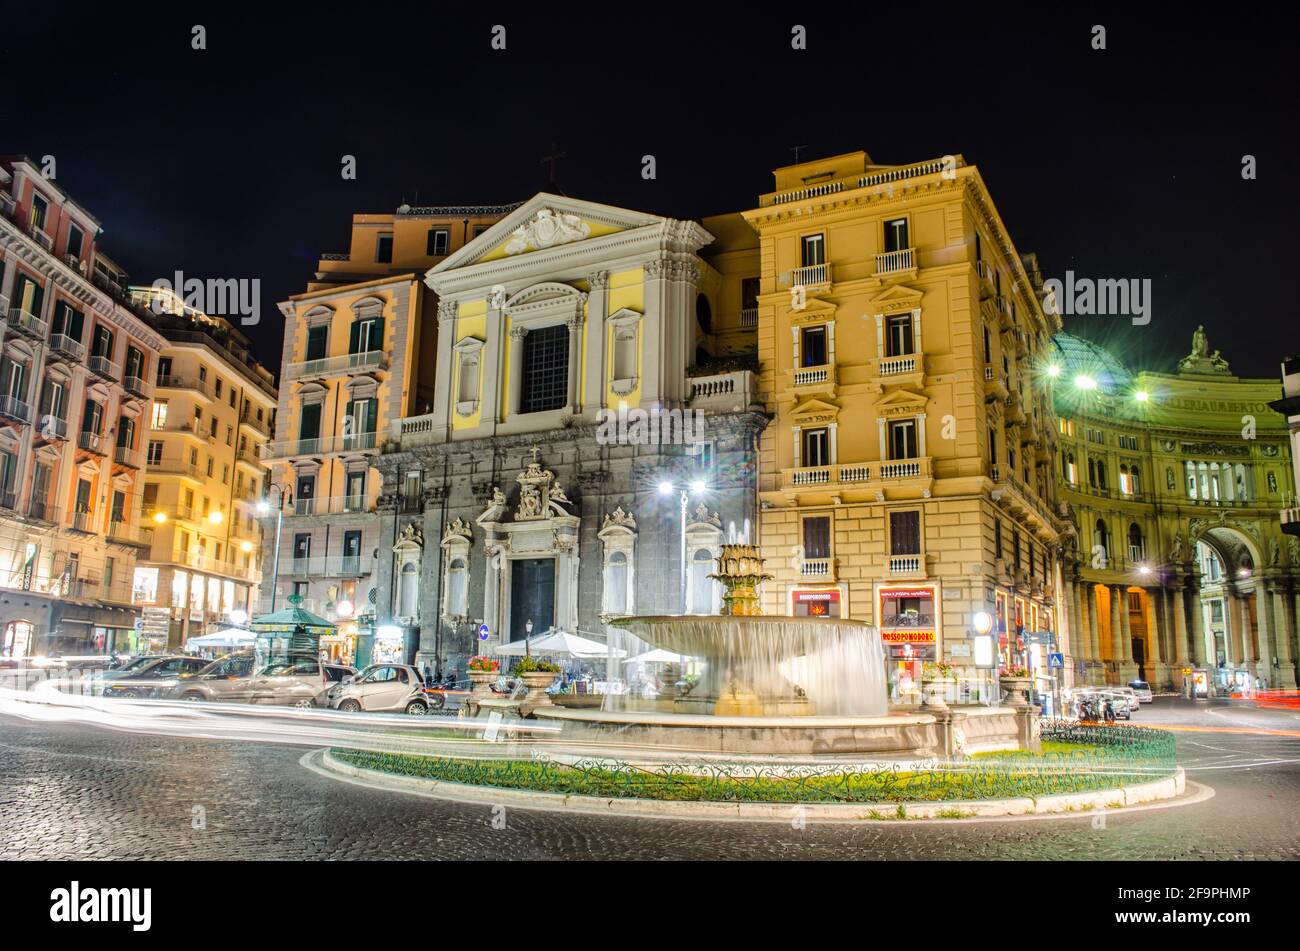 Vue nocturne sur le Teatro San Carlo dans la ville italienne de Naples Banque D'Images